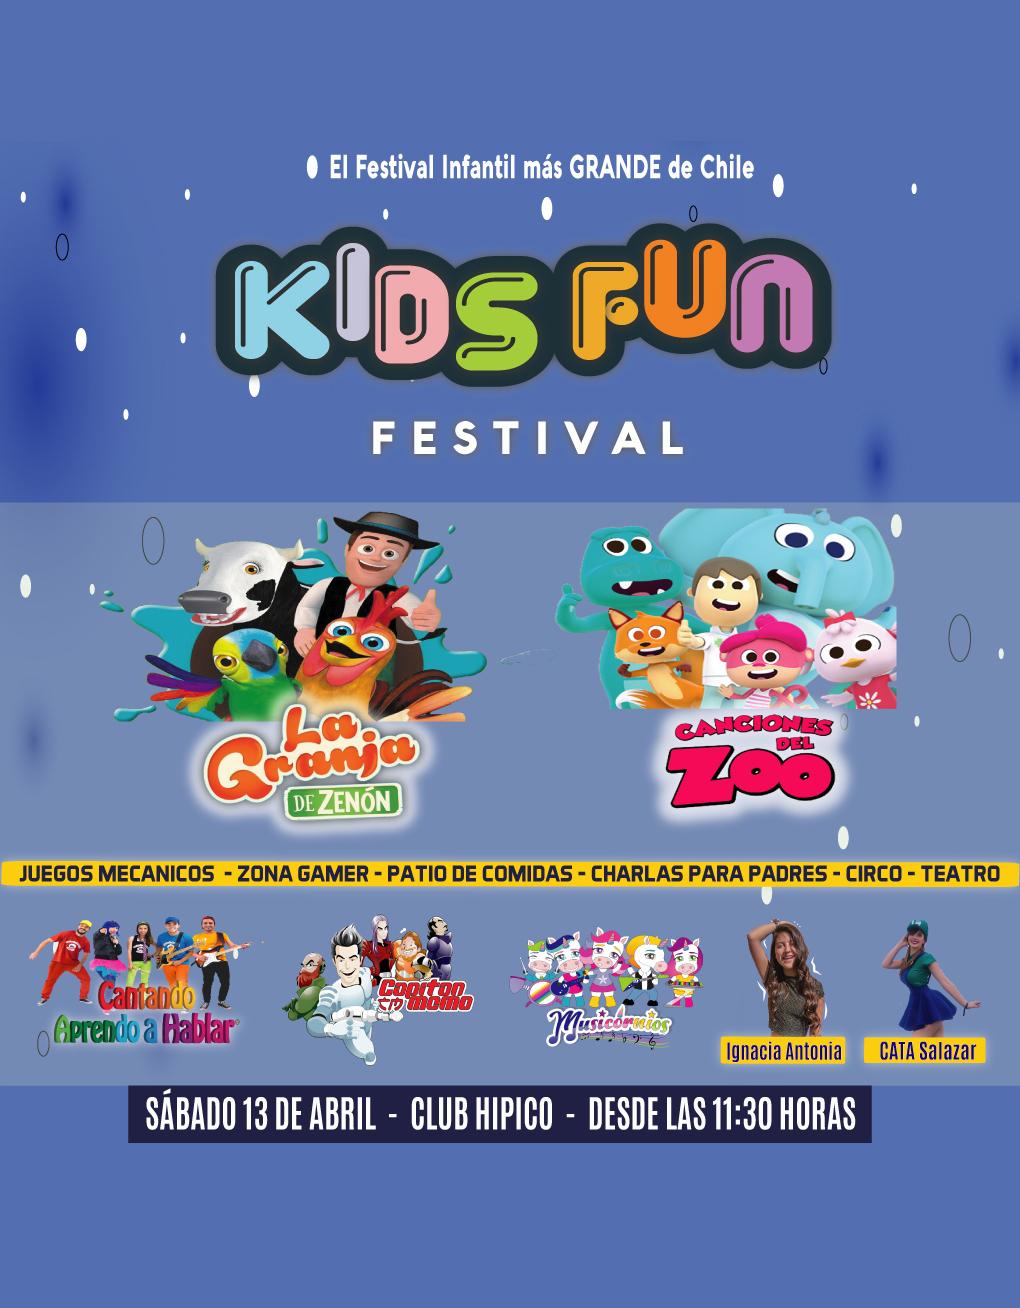 KidsFun Festival - Granja de Zenón, Canciones del Zoo y más